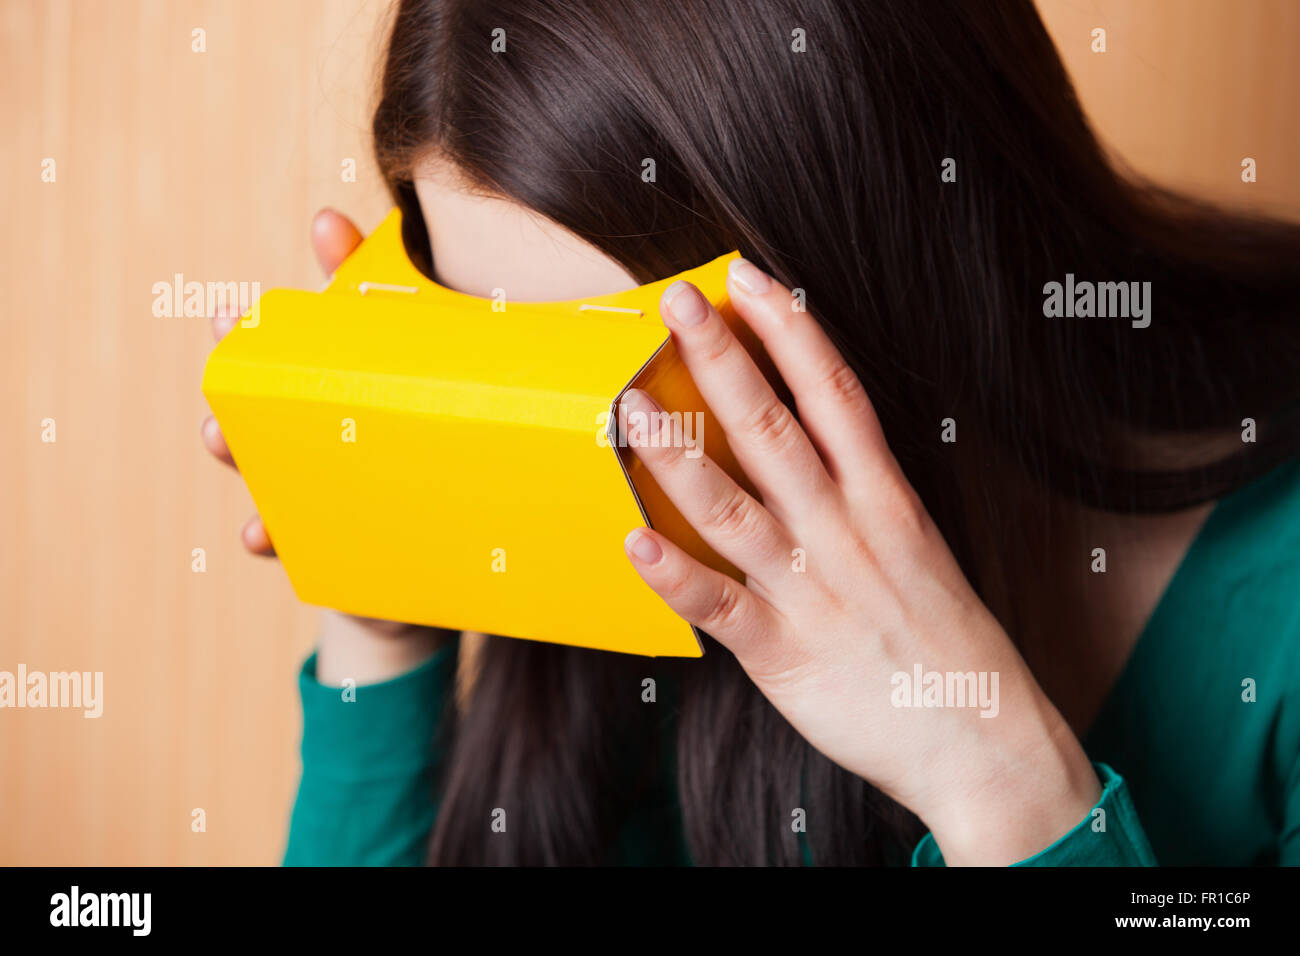 Retrato de una chica que llevaba casco de realidad aumentada de cartón emparejado con su teléfono inteligente. Foto de stock